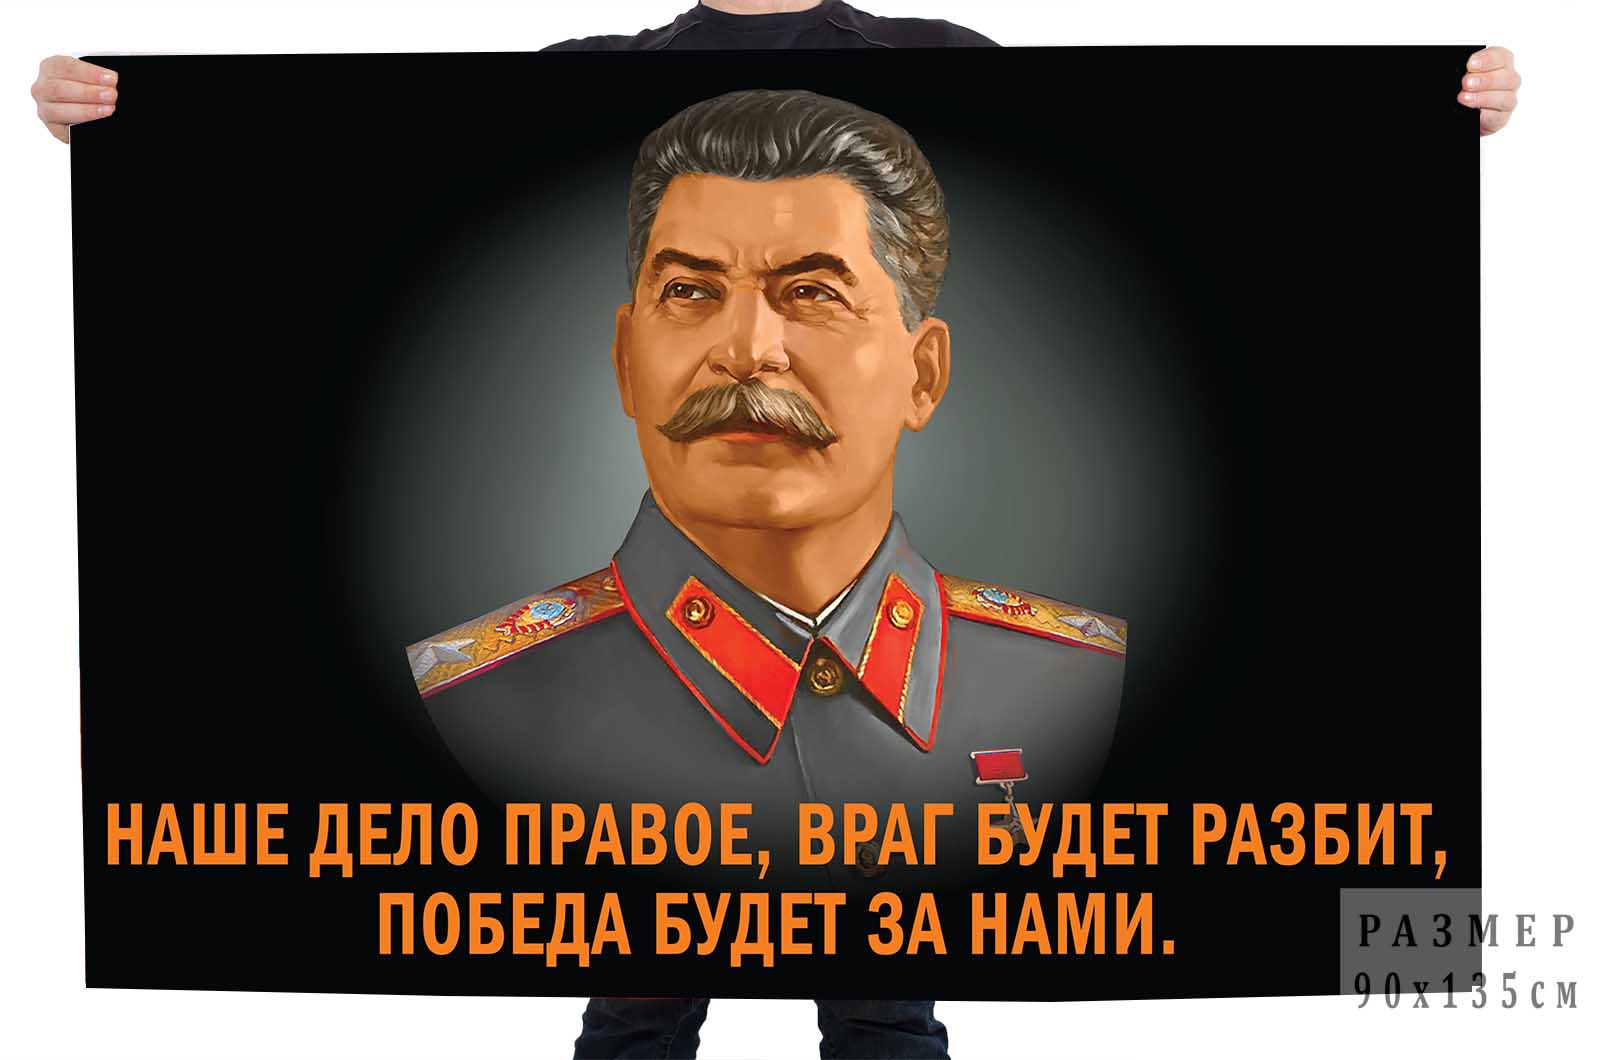 Купить флаг со Сталиным "Наше дело правое"